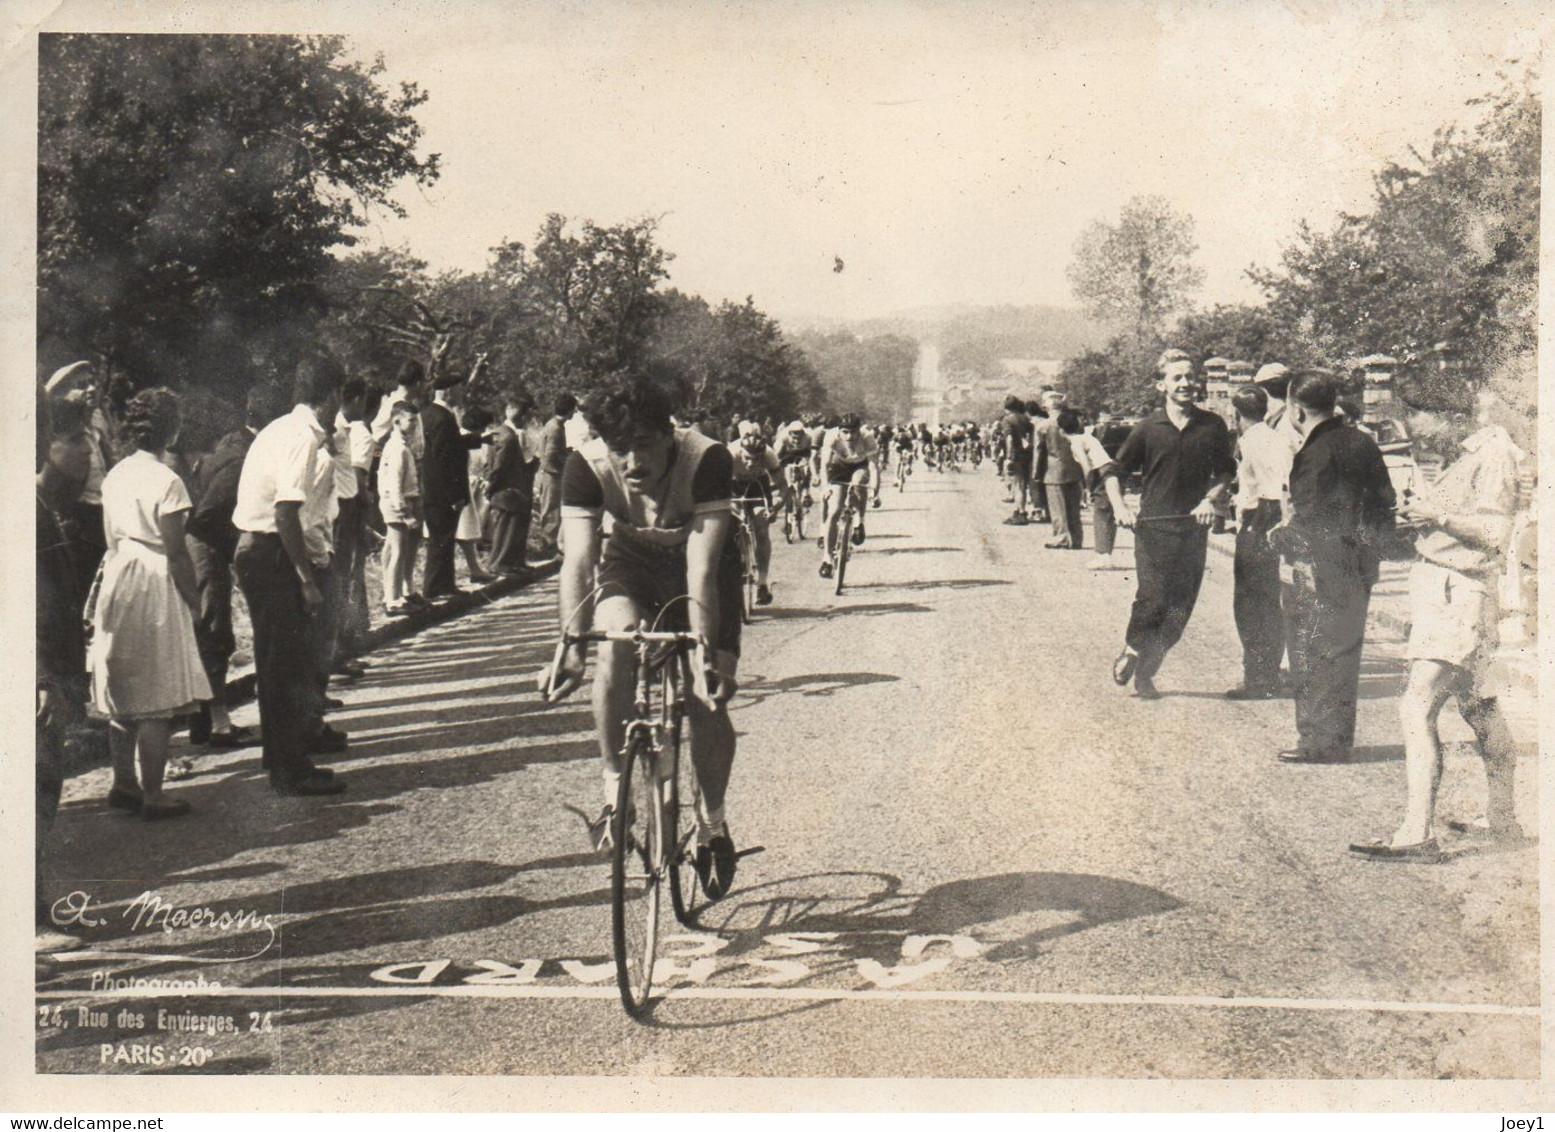 Photo 13/18 Course De Vélos Années 50 ,Macron Photo CV 19ème Gobillot - Radsport